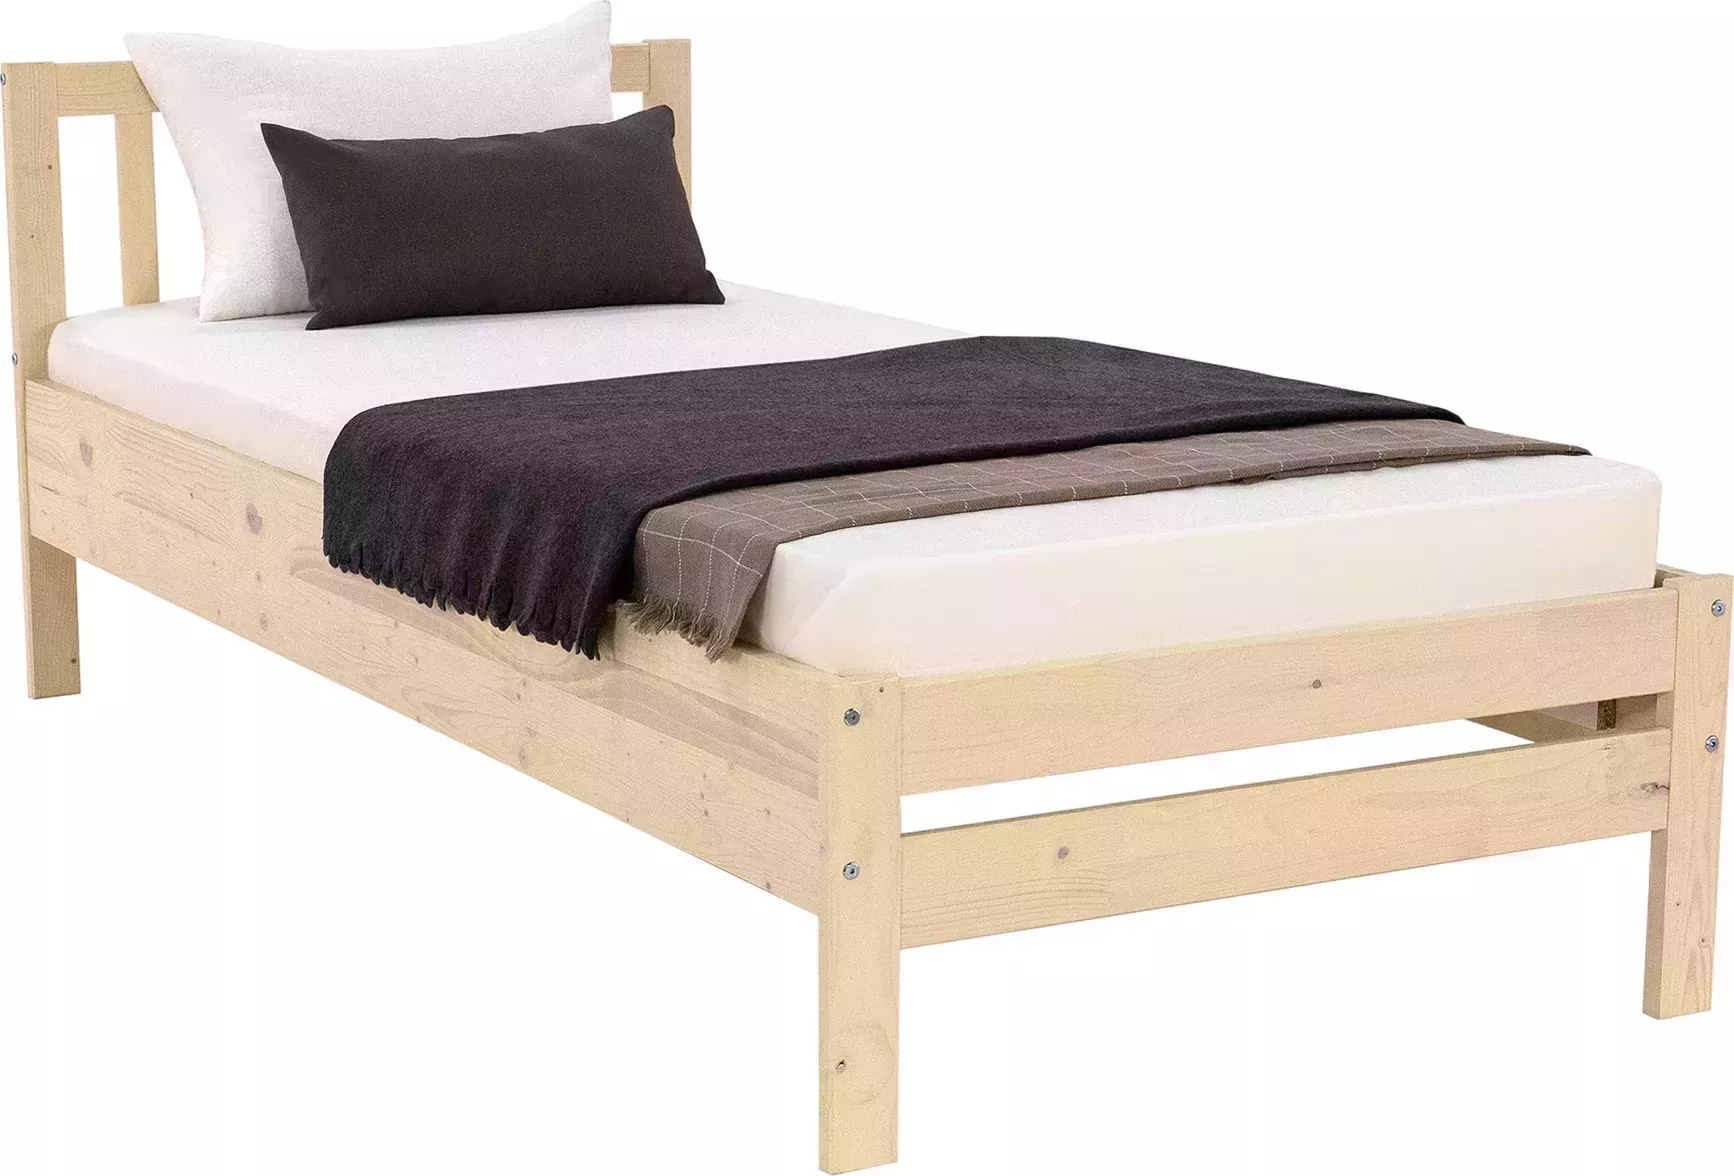 Кровать Боровичи-Мебель Массив 0.9 м выбеленная береза